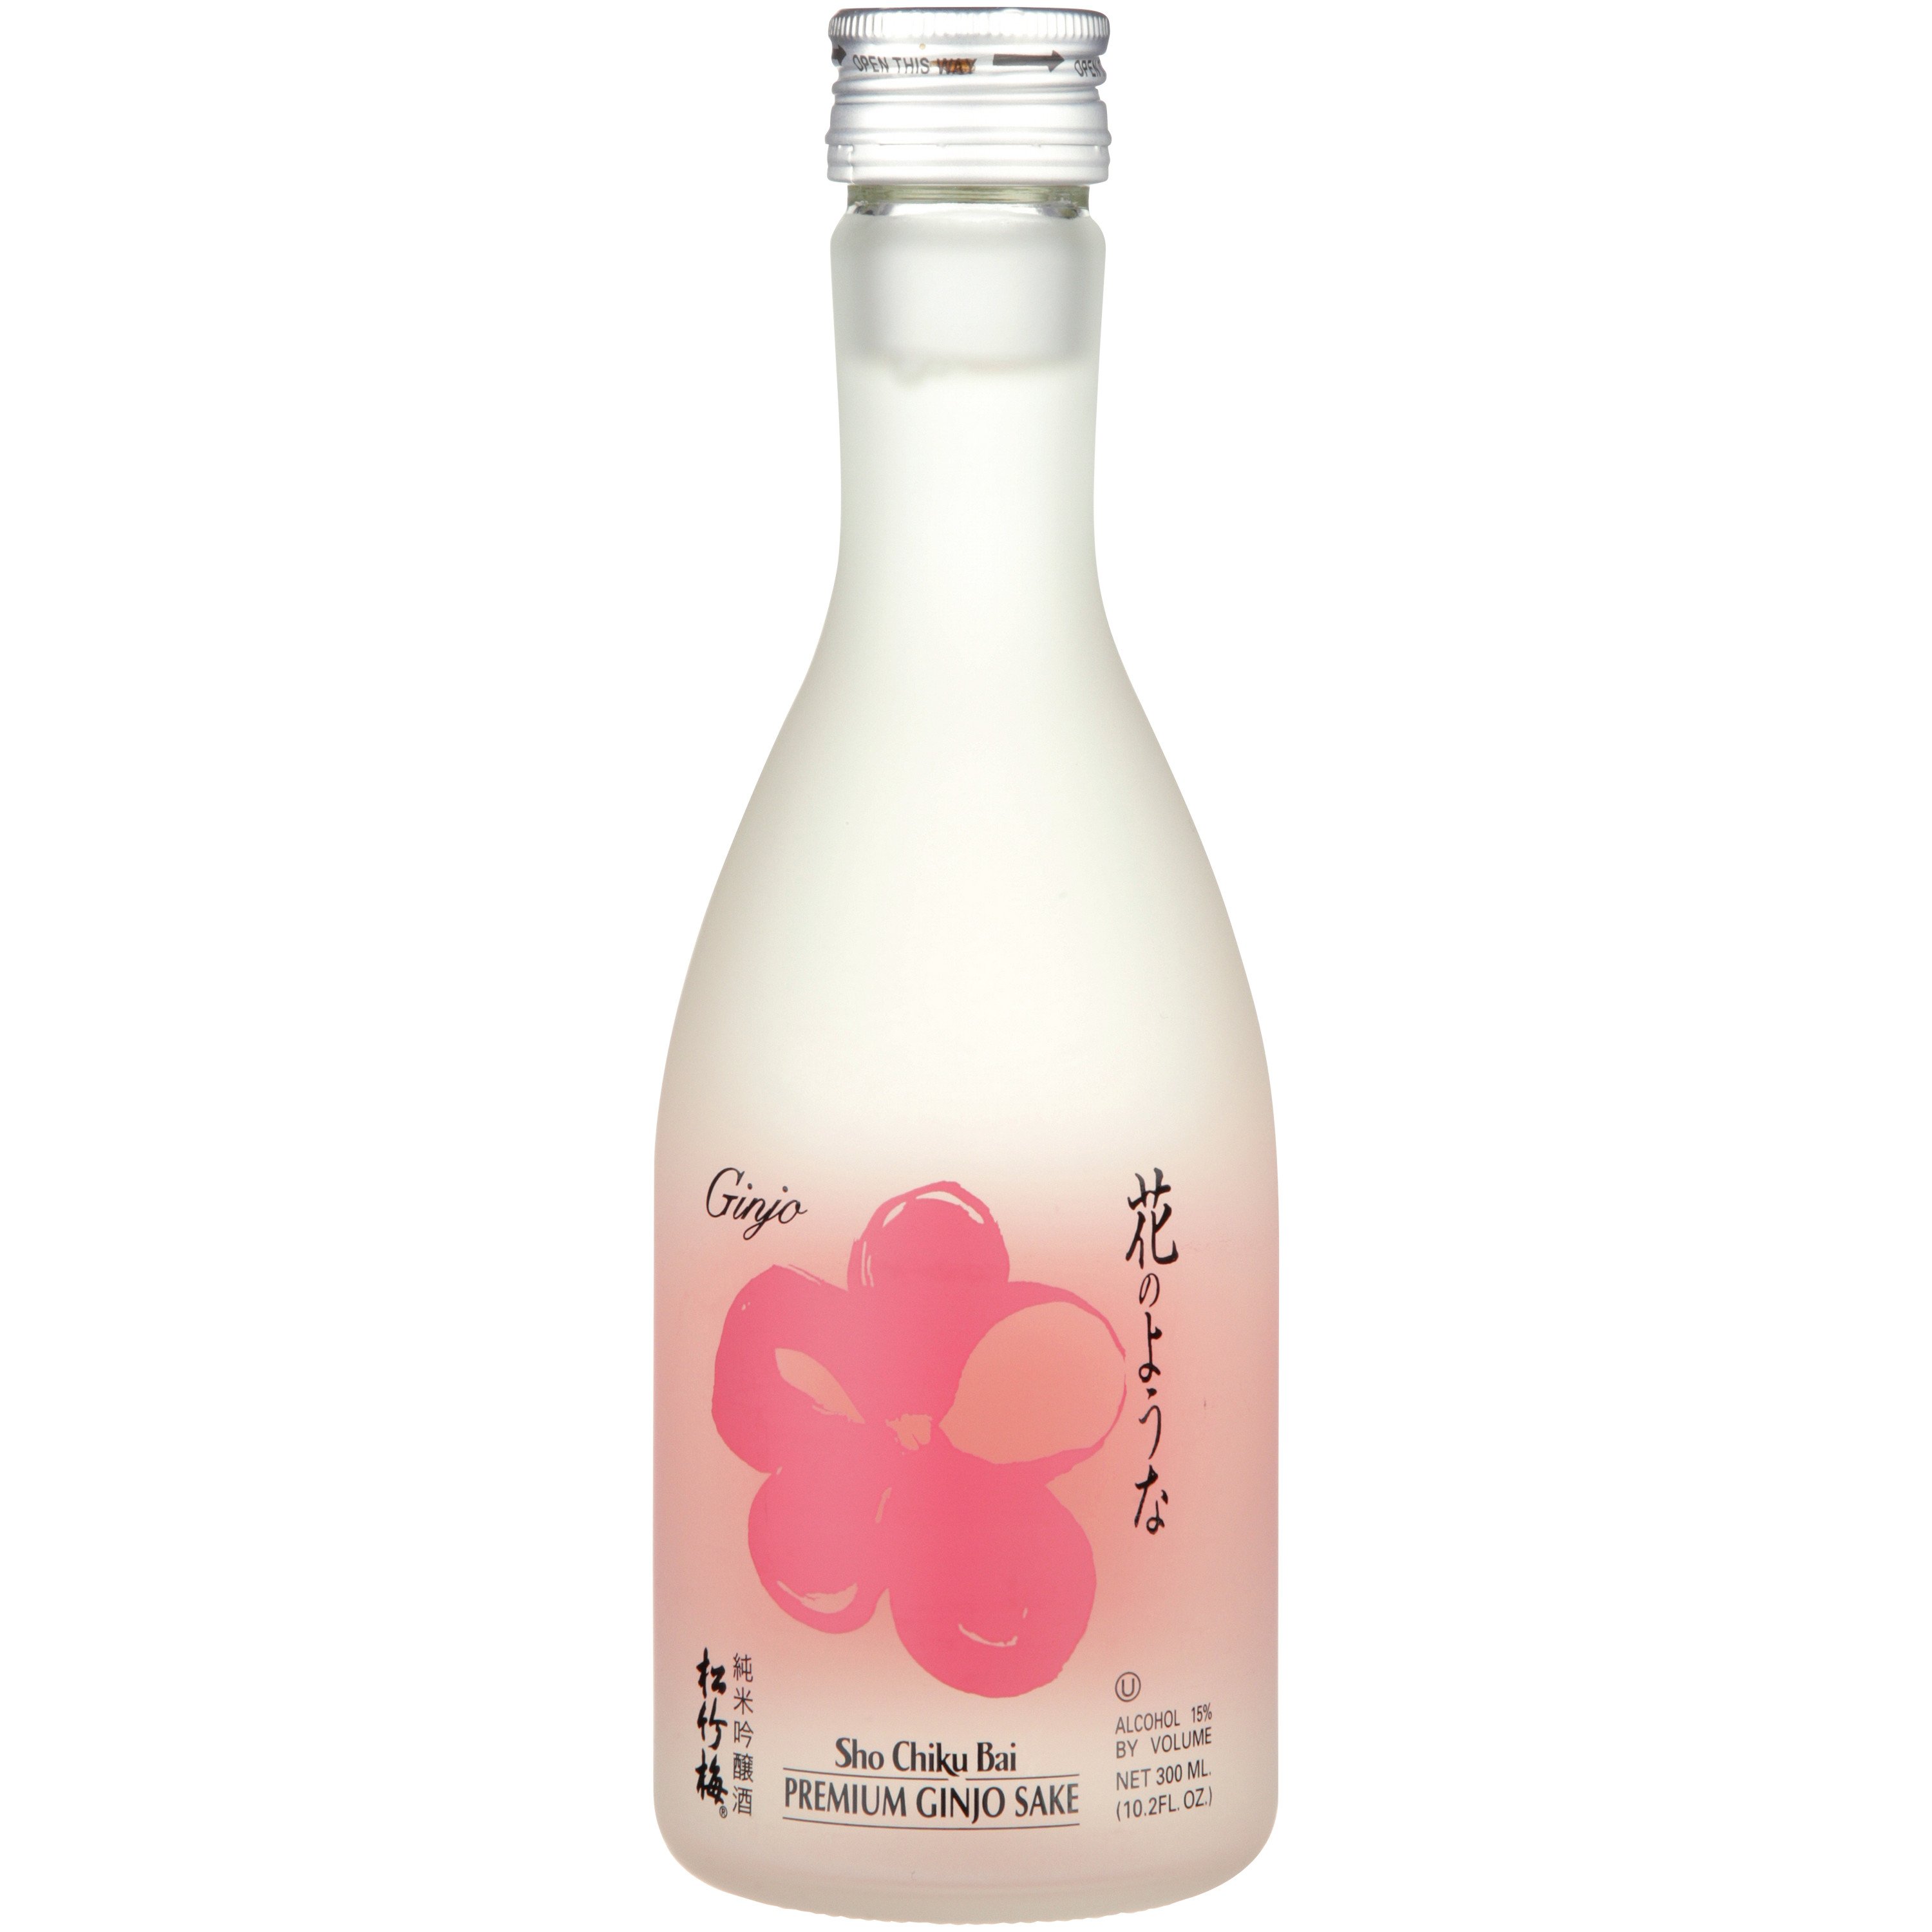 Sho Chiku Bai Premium Ginjo Sake Shop Wine at HEB